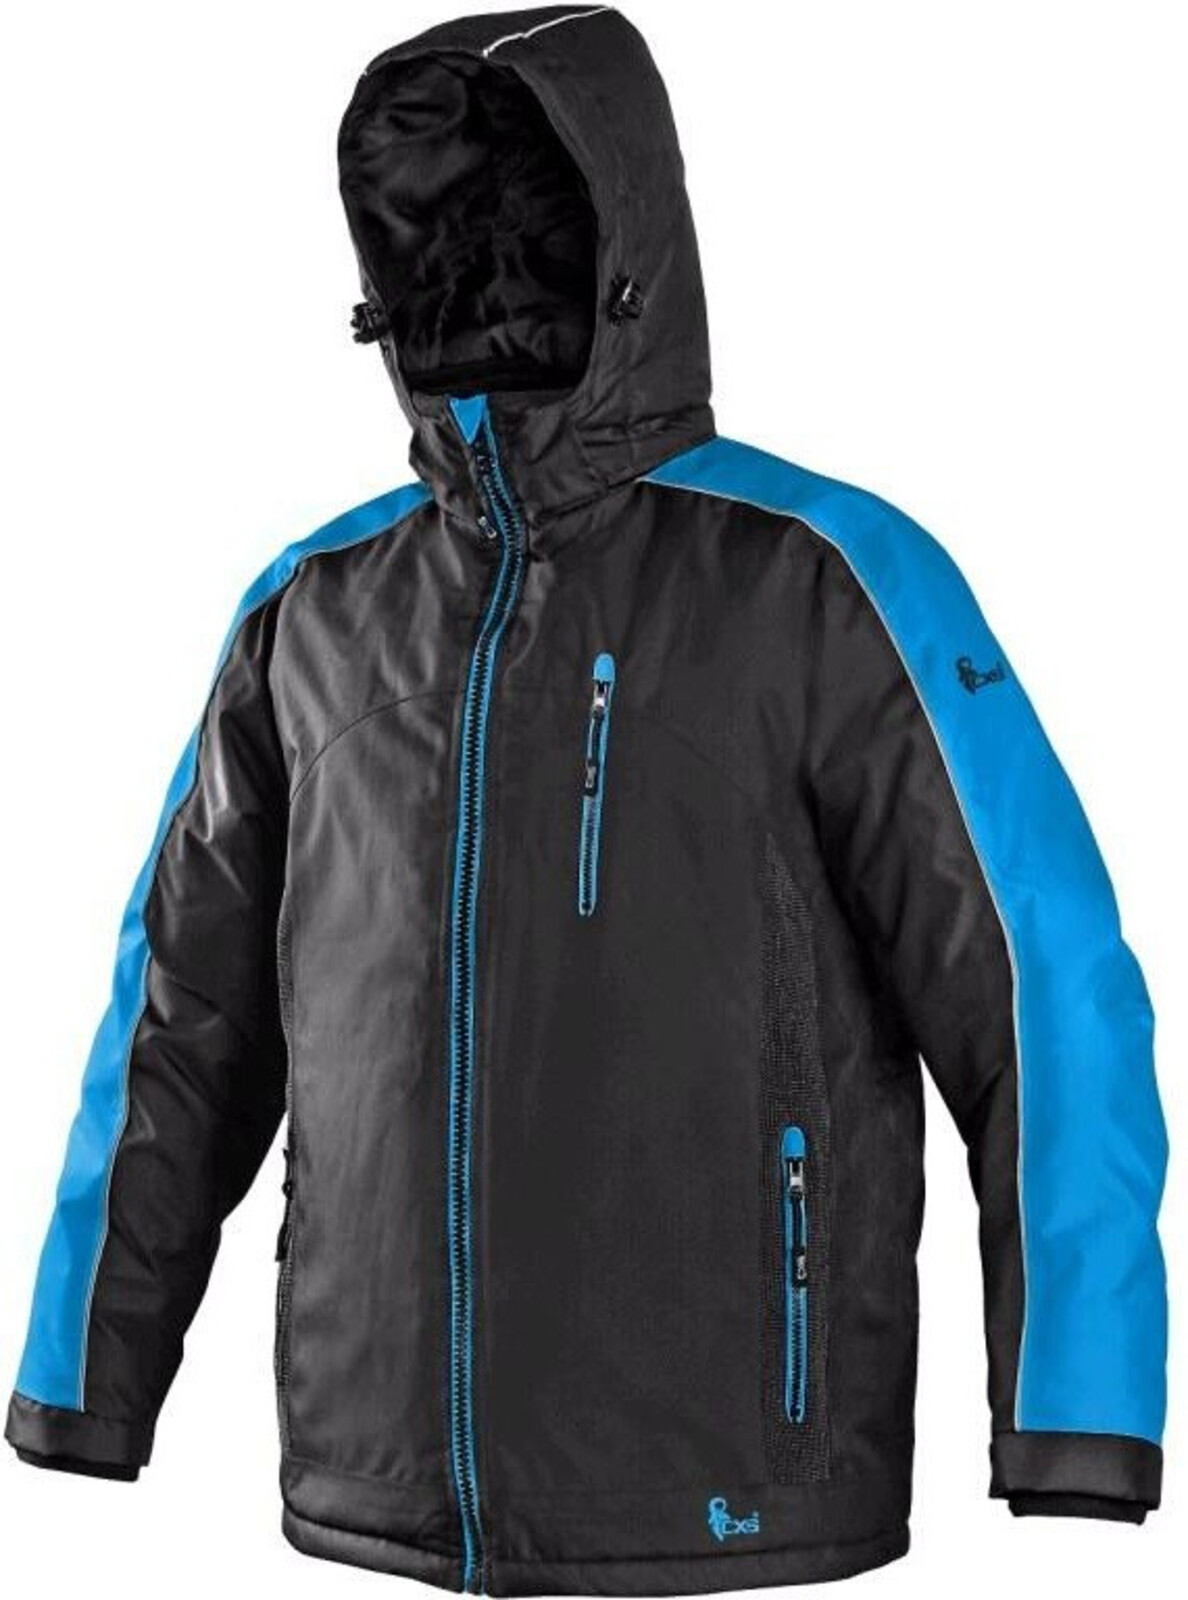 Pánska zimná bunda CXS Brighton - veľkosť: L, farba: čierna/modrá